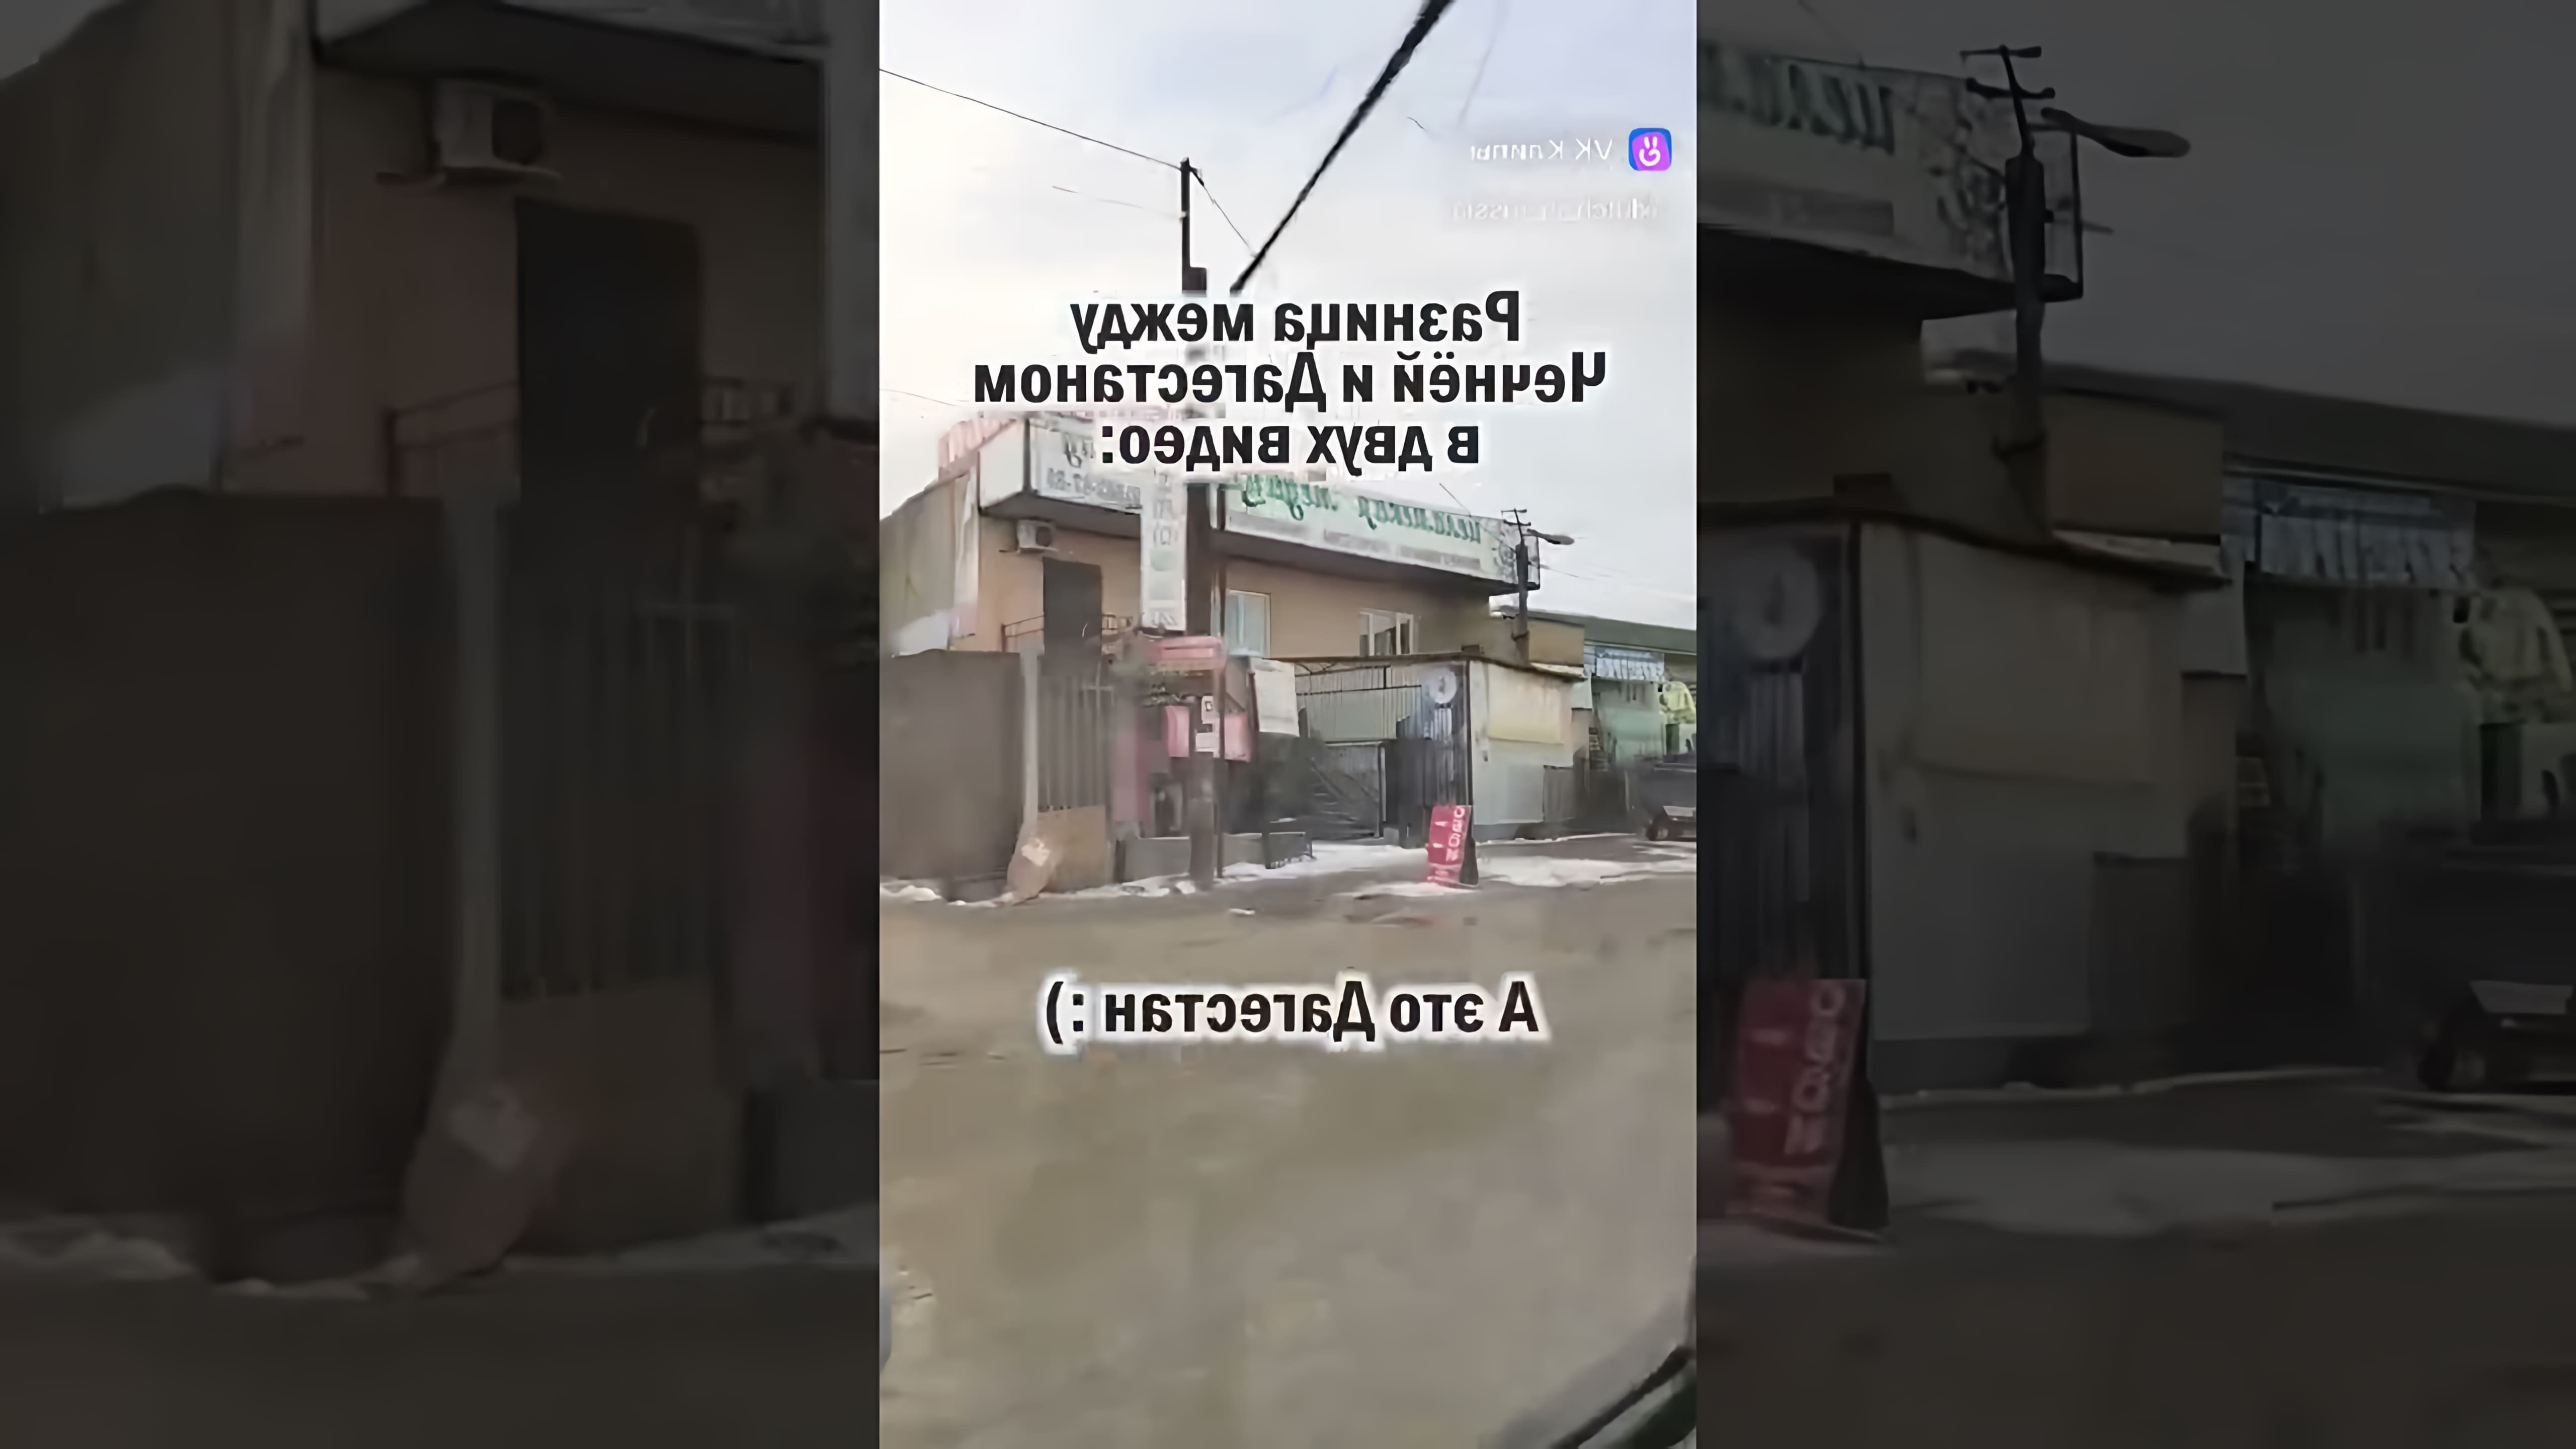 Разница Чечни с Дагестаном: Видео-ролик, который я предлагаю, будет содержать сравнение двух регионов России - Чечни и Дагестана